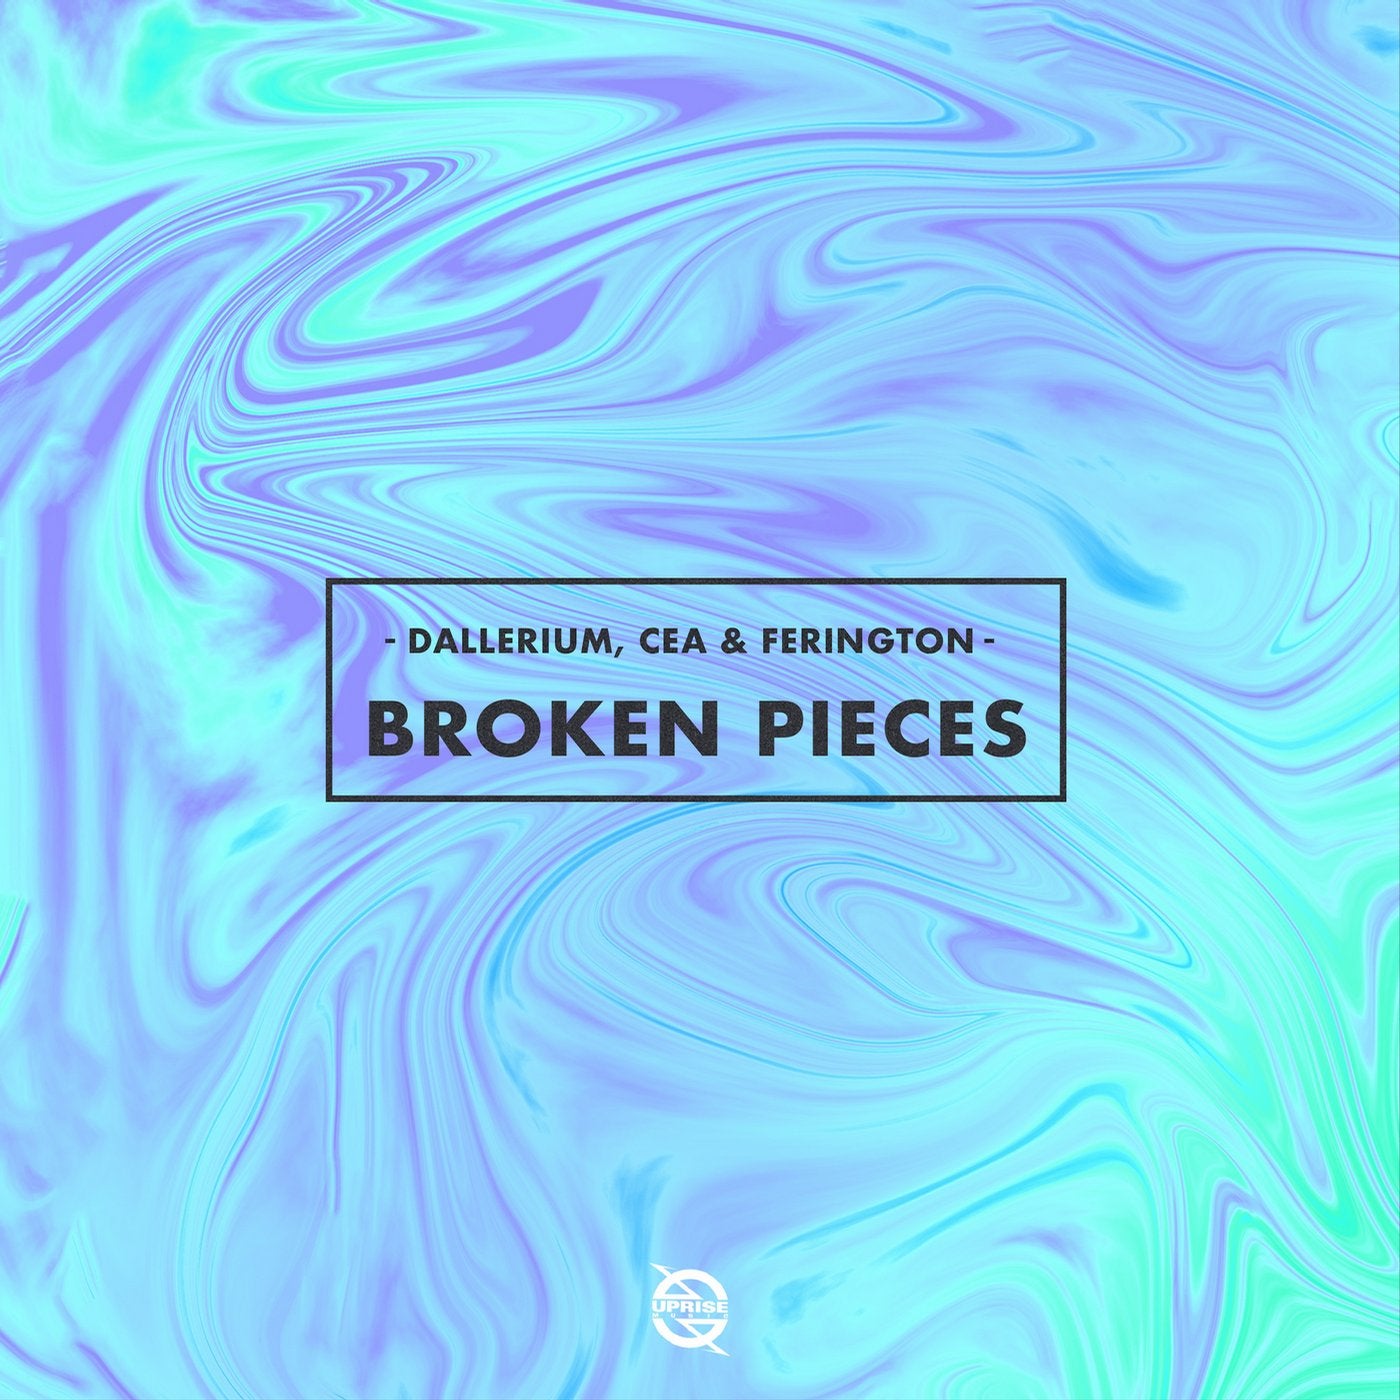 Broken Pieces